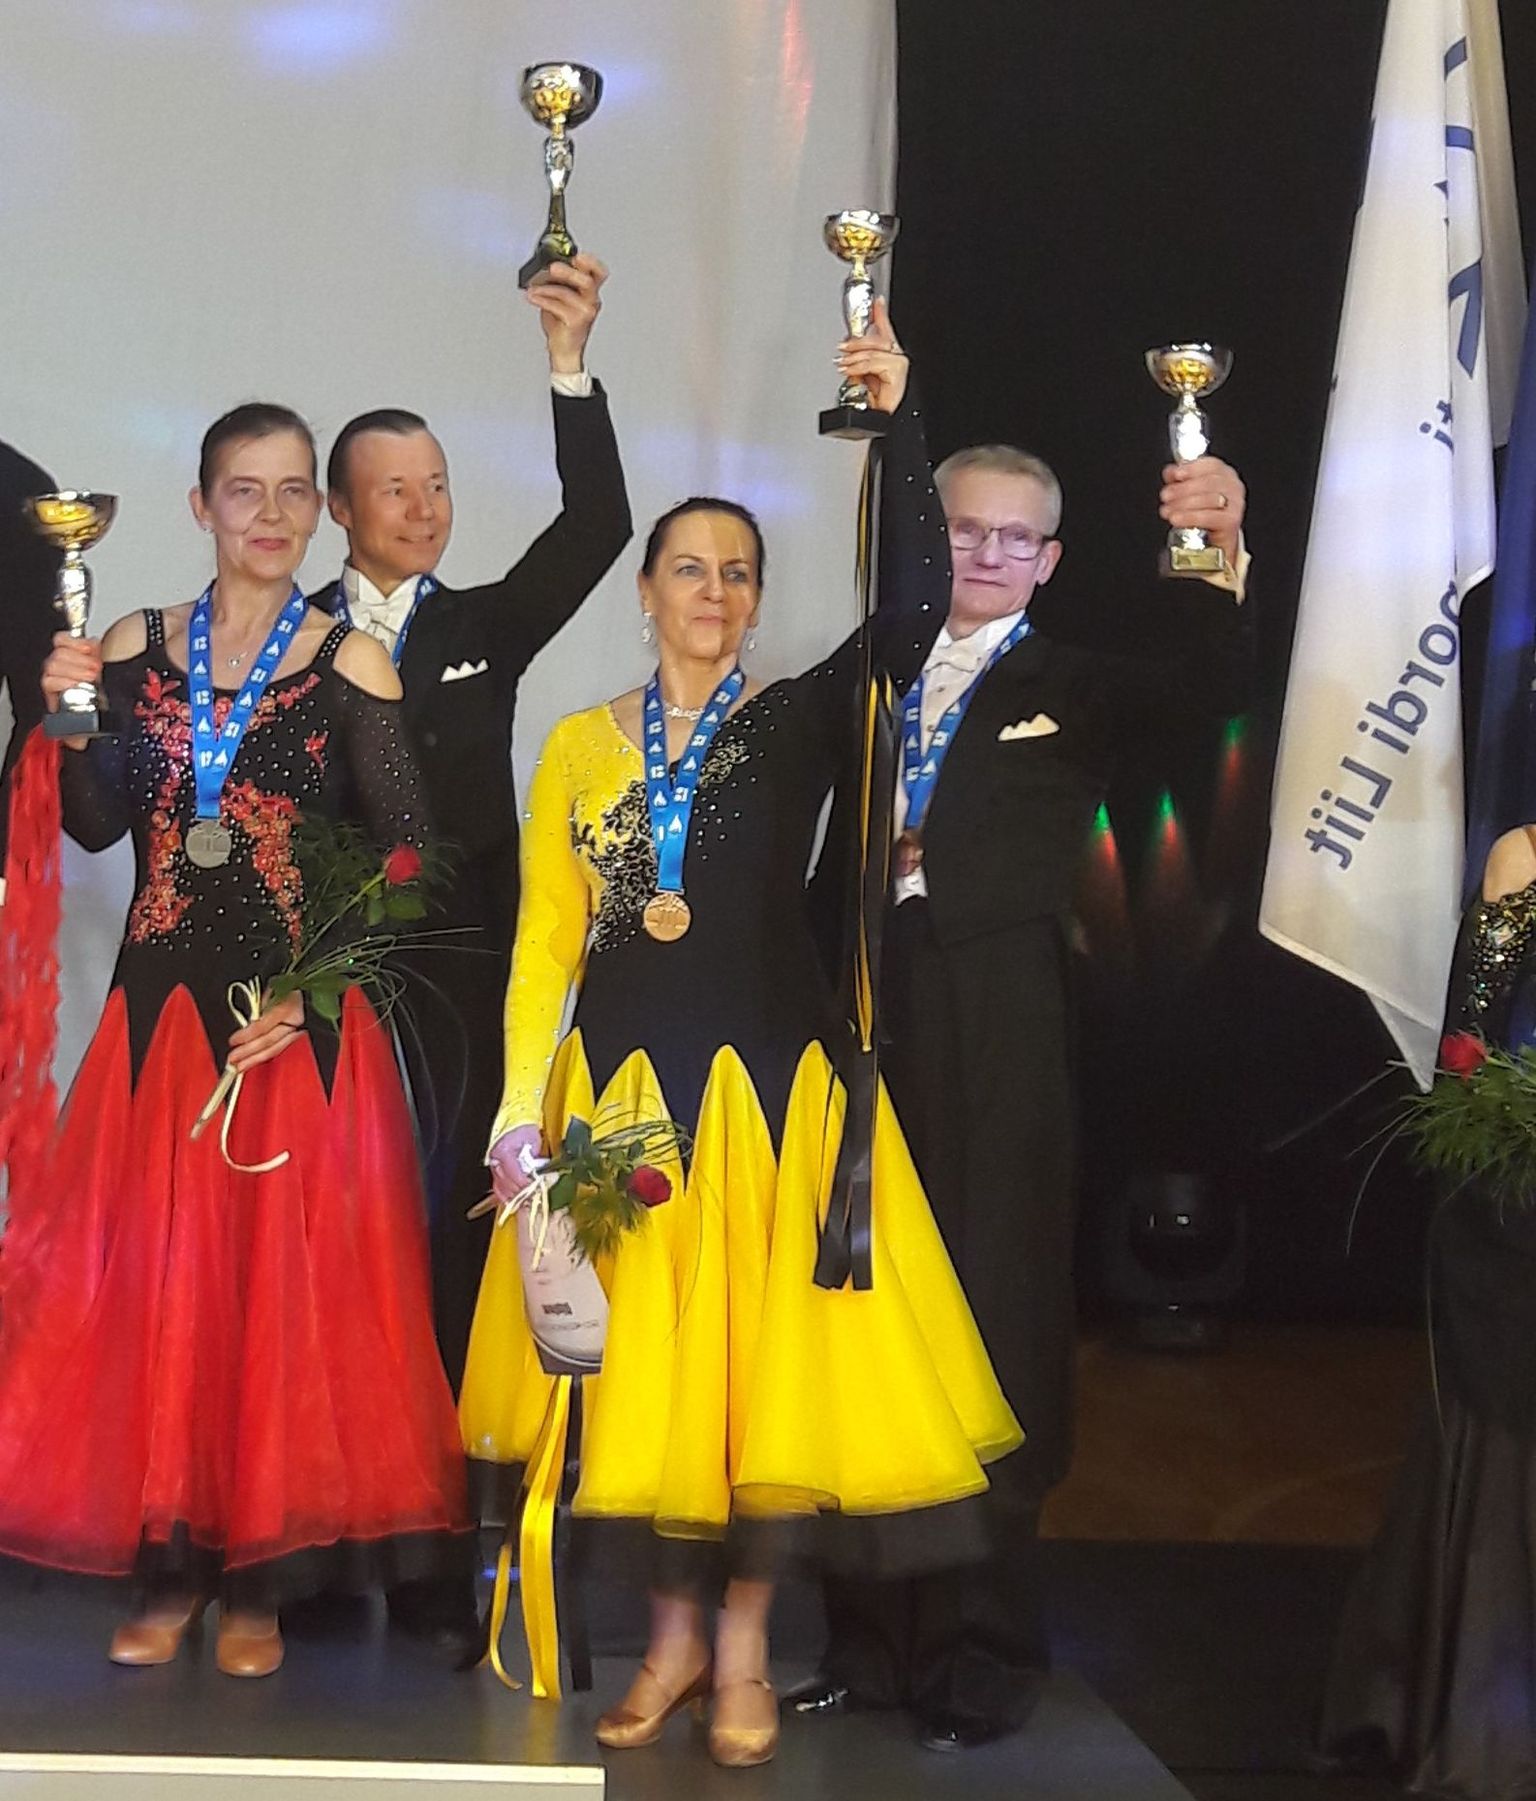 Kaks Viljandimaa seeniorpaari tulid Eesti kümne tantsu meistrivõistlustel medalile: Jüri Turjakas ja Maret Lina (vasakul) said hõbeda ning Olev Mets ja Lii Kask pronksi.